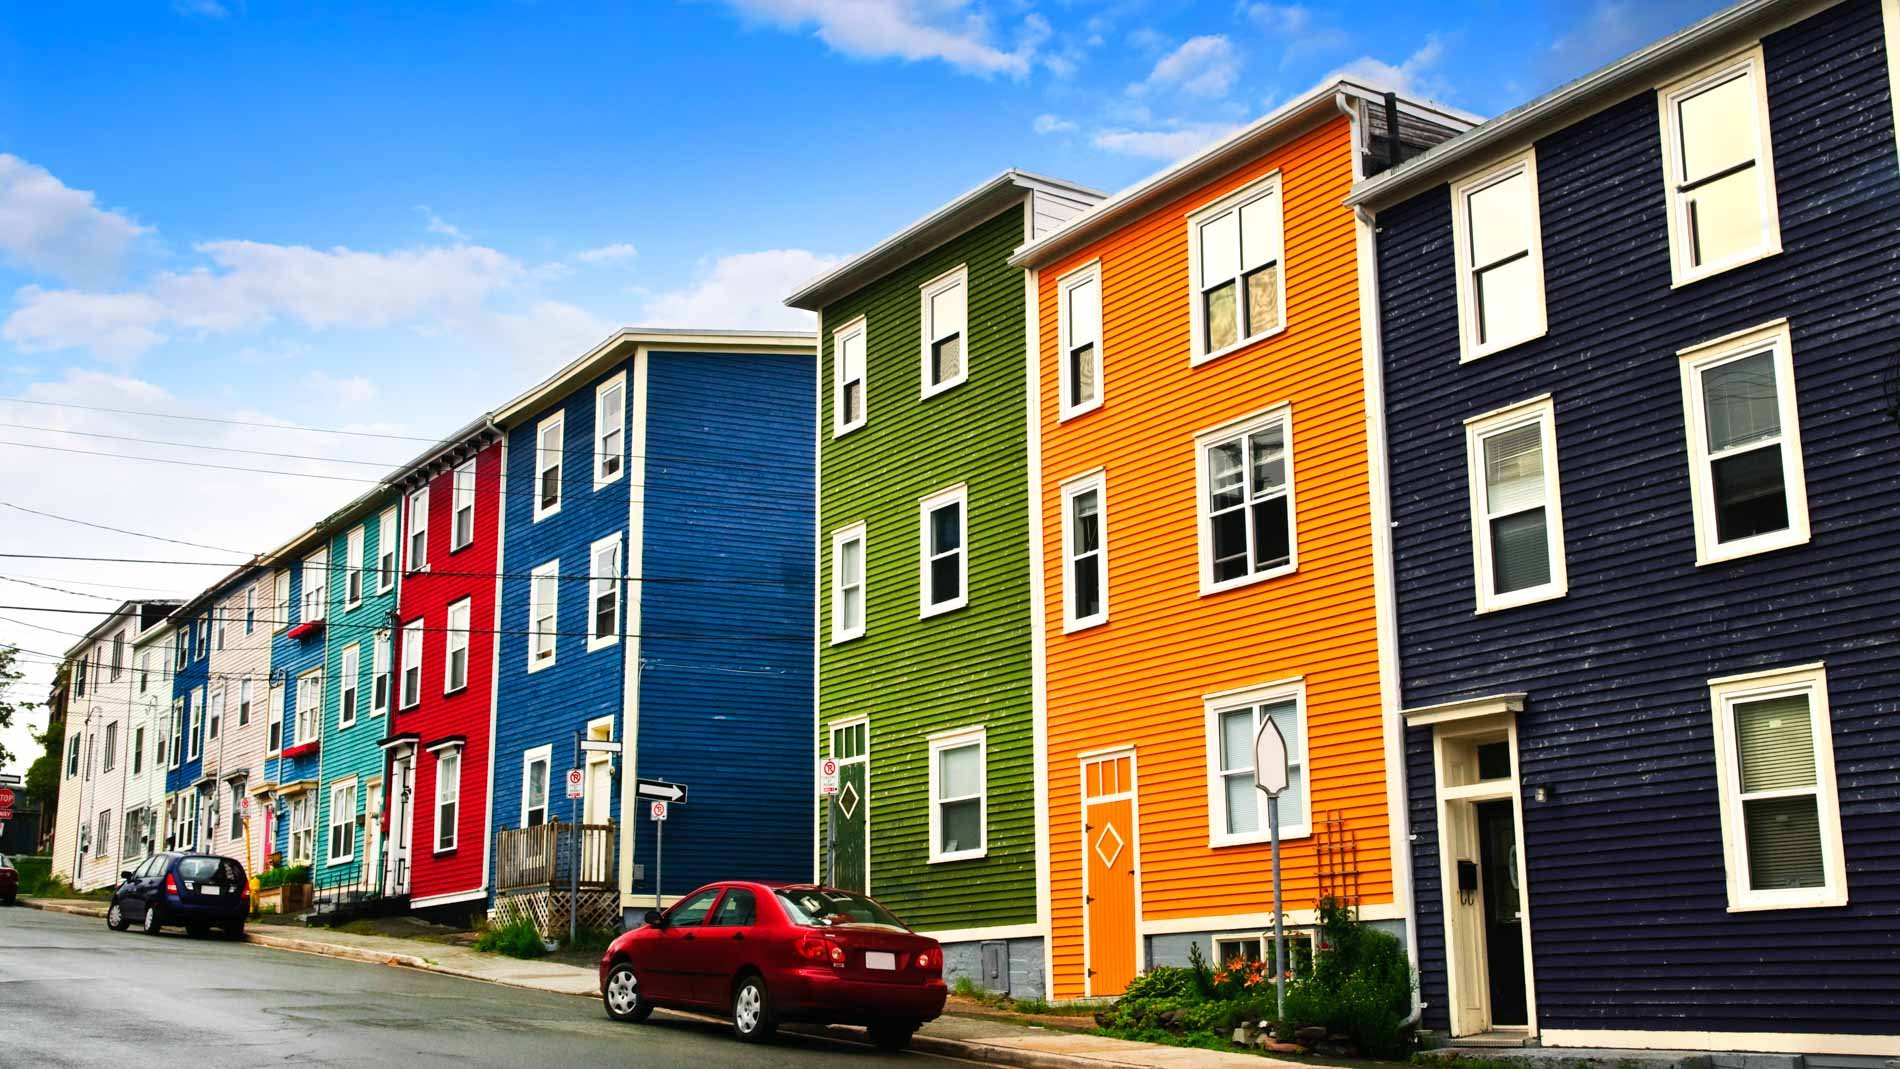 Rue bordée de maisons colorées à St. John’s, à Terre-Neuve, au Canada